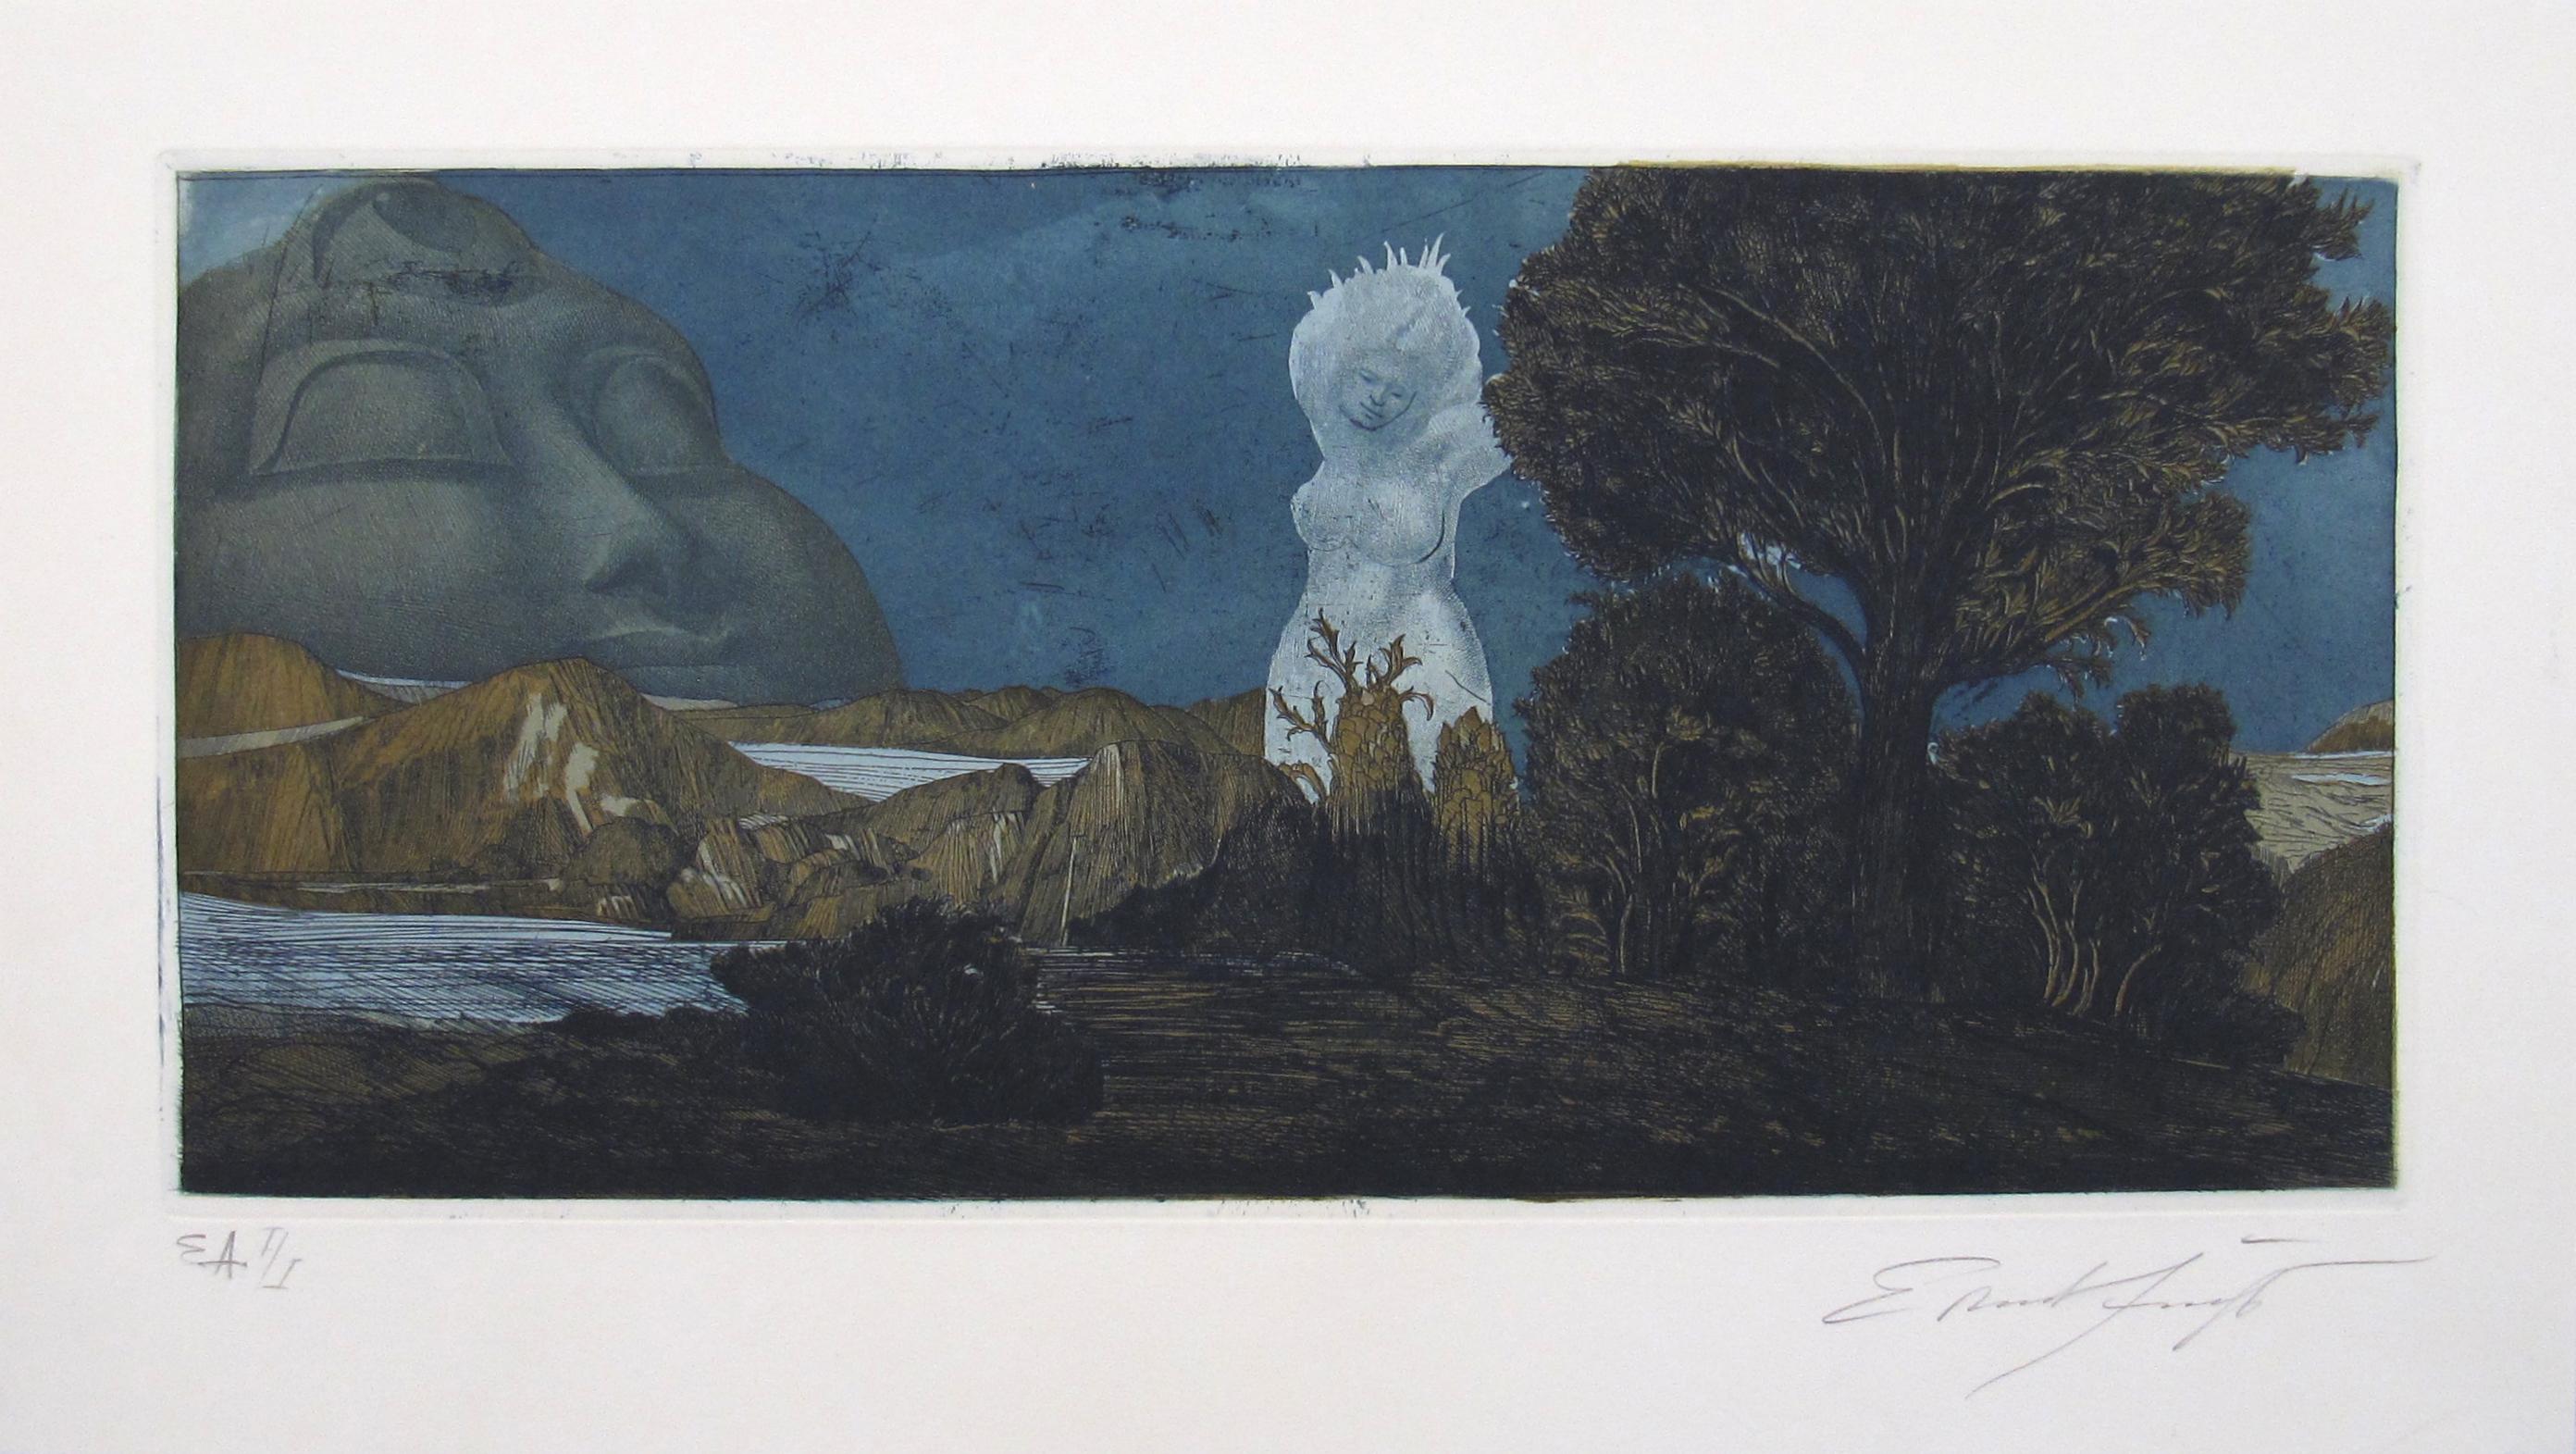 Ernst Fuchs
(Autrichien, 1930 - 2015)

Zyklopische Landschaft, 1967
(Paysage cyclopéen)

•	Aquatinte colorée sur papier chiffon (Prob. papier Arches français)
•	Feuille ca. 31,5 x 56 cm
•	Plaque, environ 22,5 x 48 cm
•	Signé en bas à